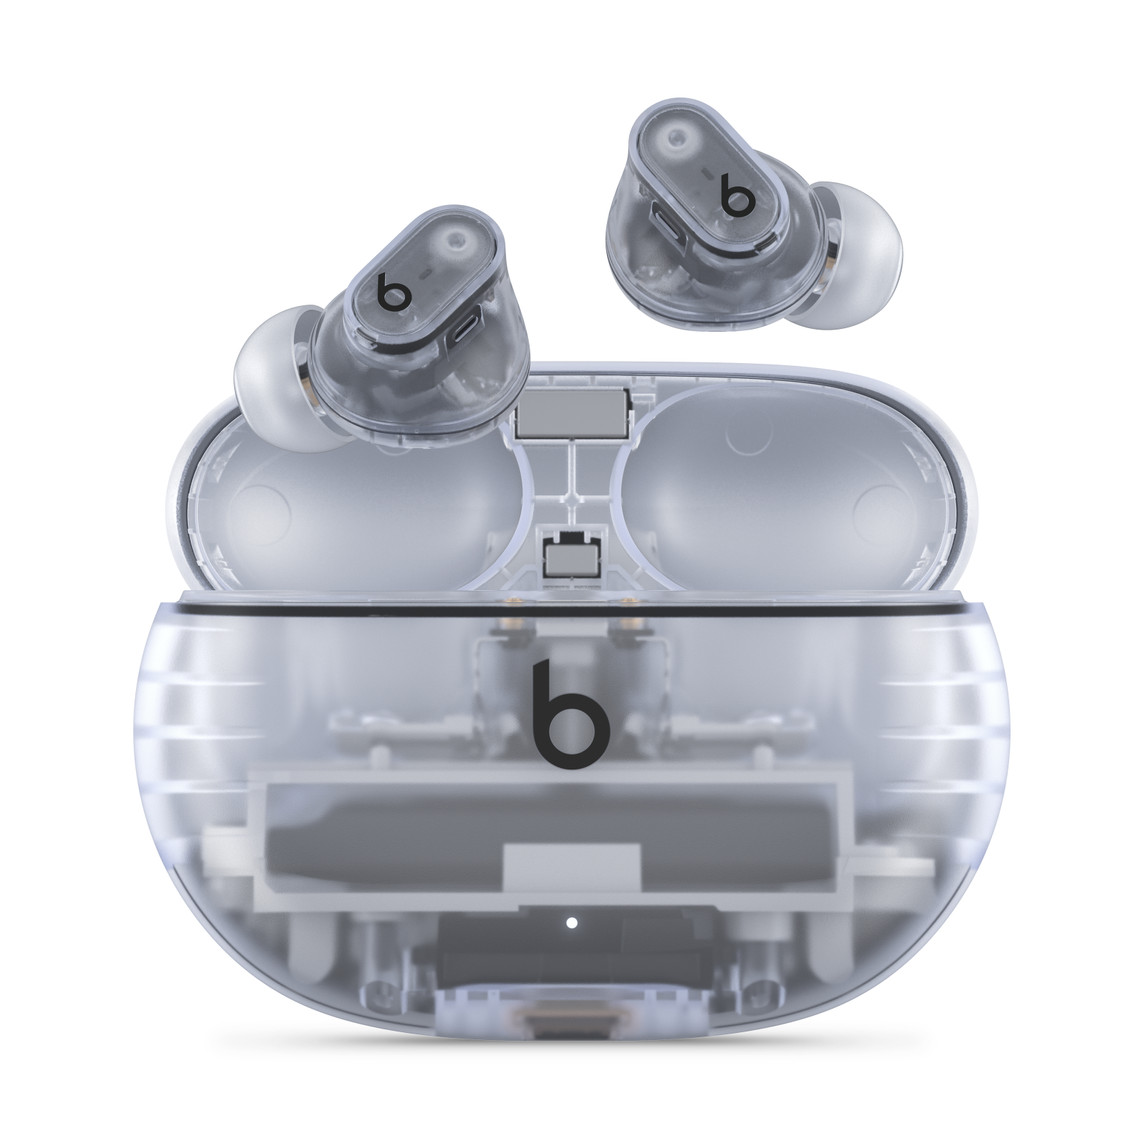 Úplně bezdrátová sluchátka Beats Studio Buds + s potlačováním hluku v průhledném provedení a s logem Beats nad praktickým nabíjecím pouzdrem.